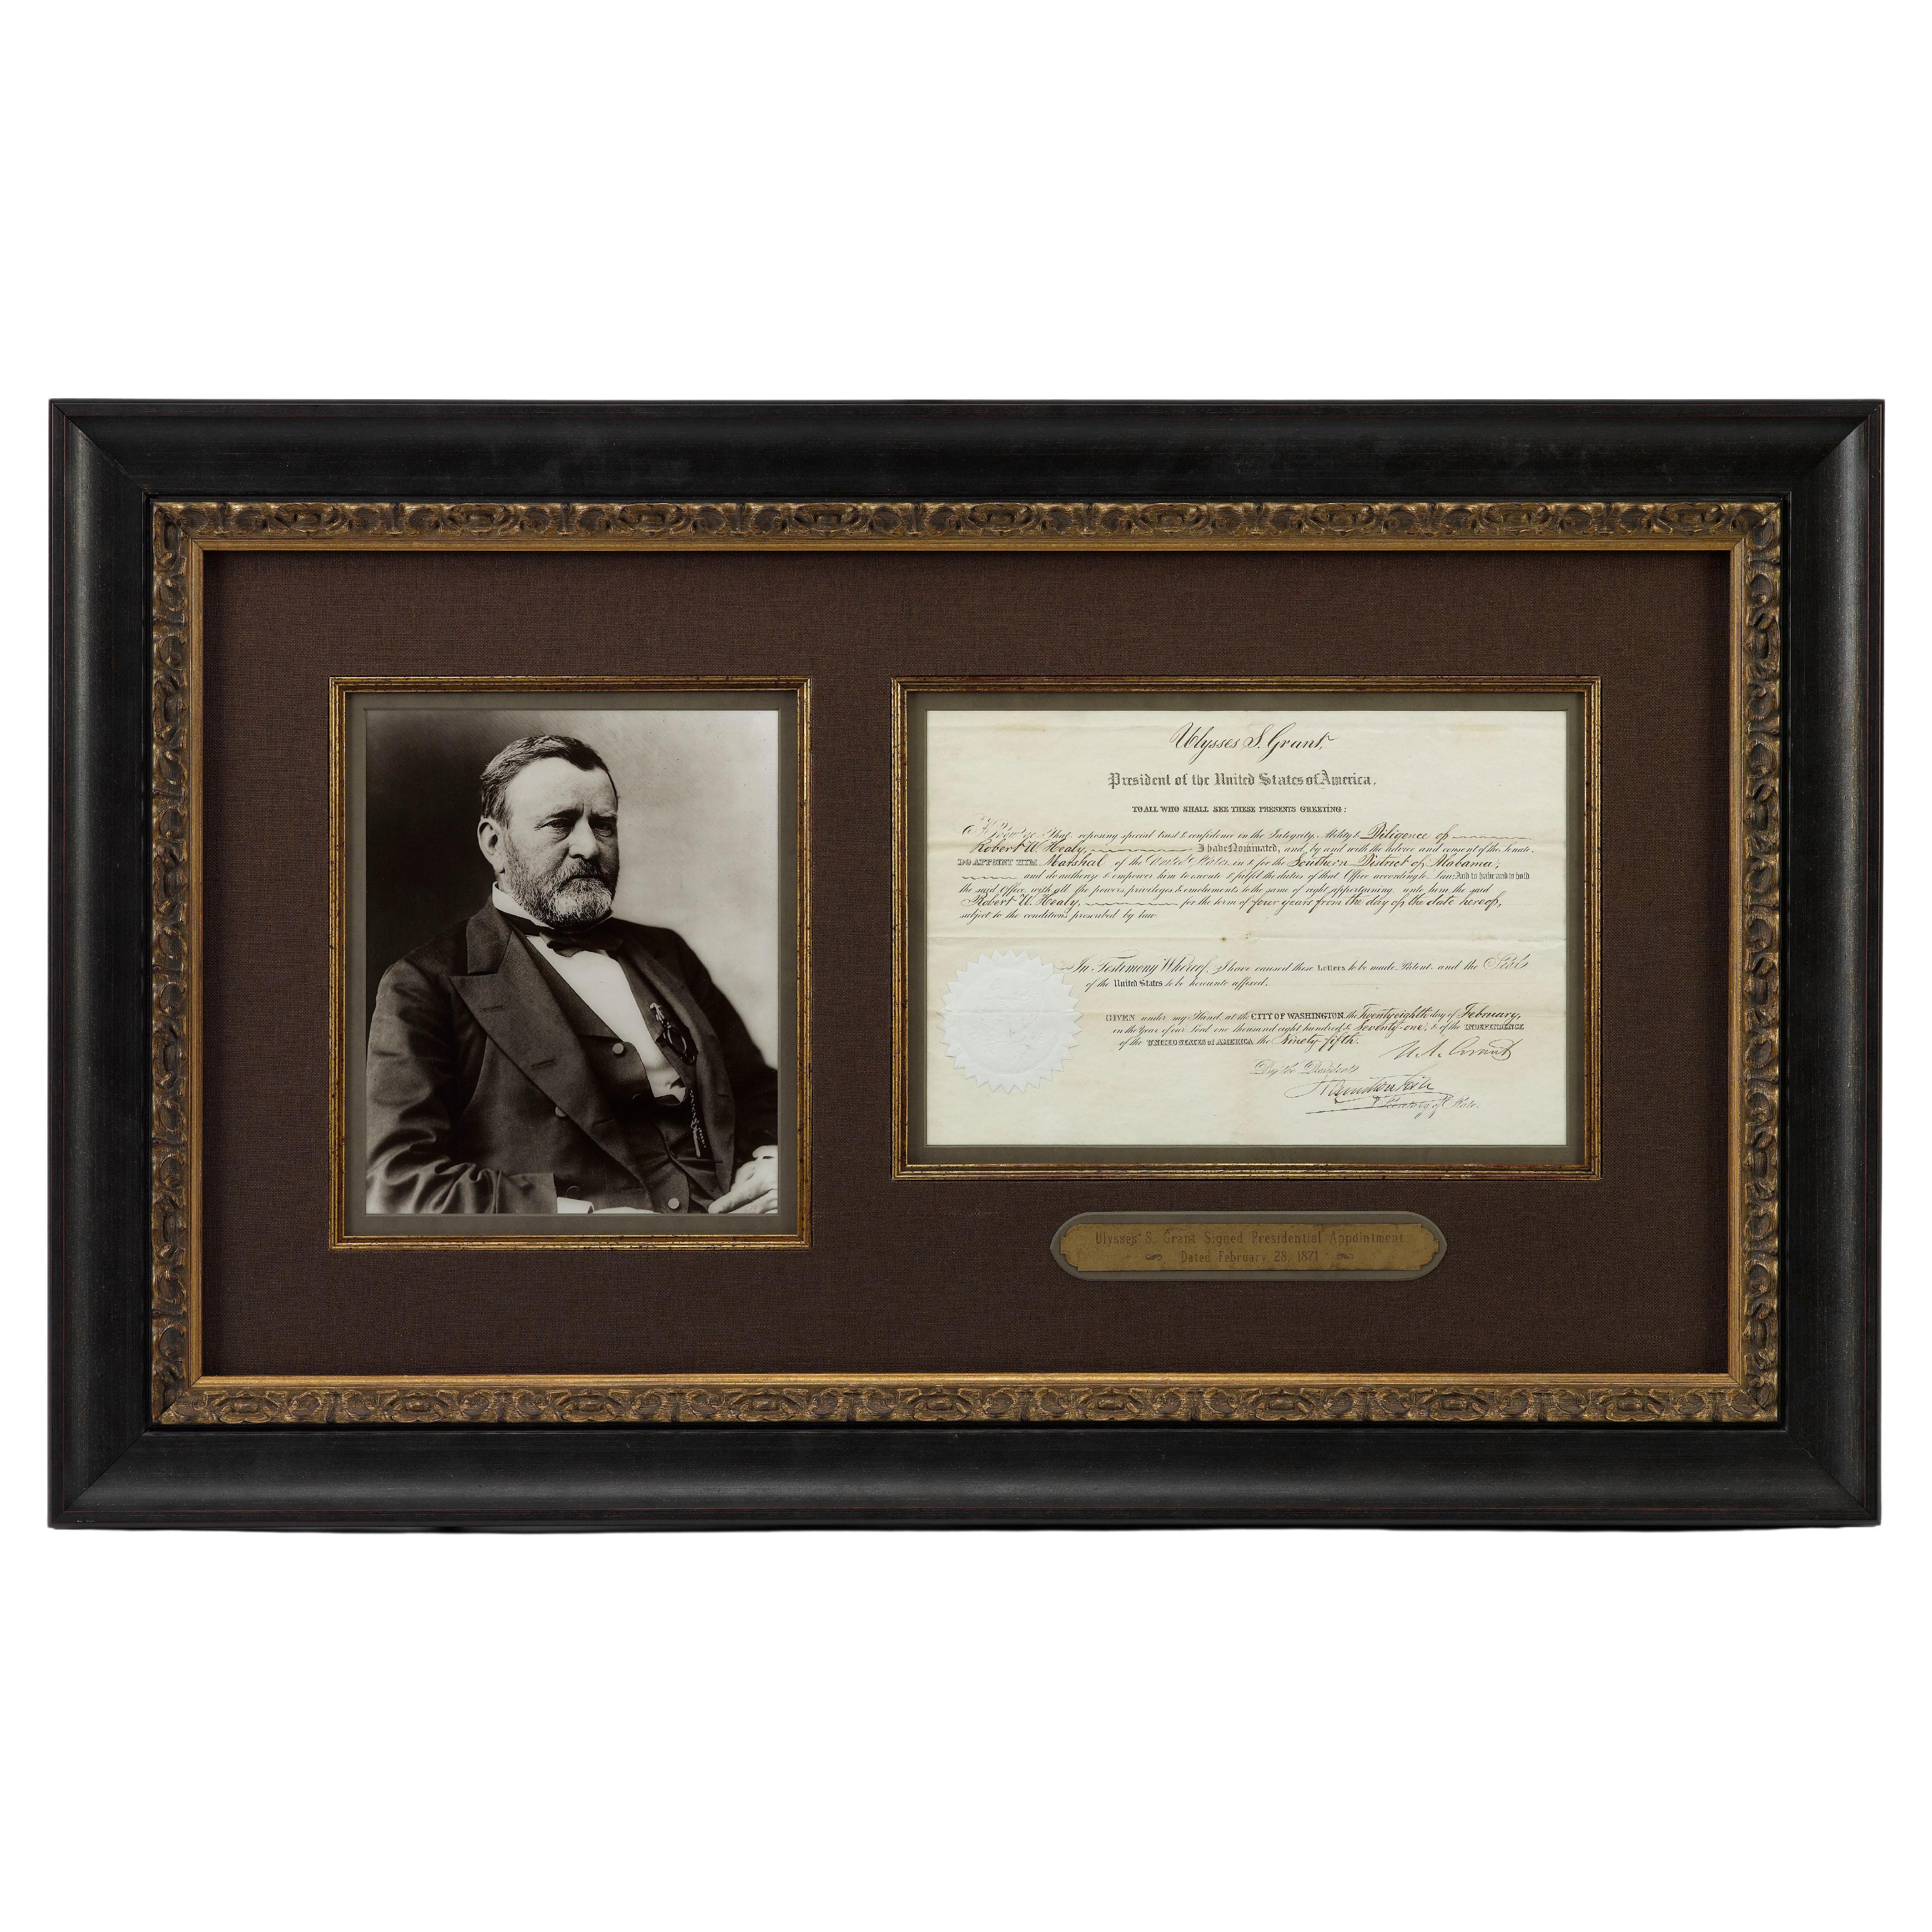 Signierter Präsidentschaftsstuhl von Ulysses S. Grant, datiert 28. Februar 1871